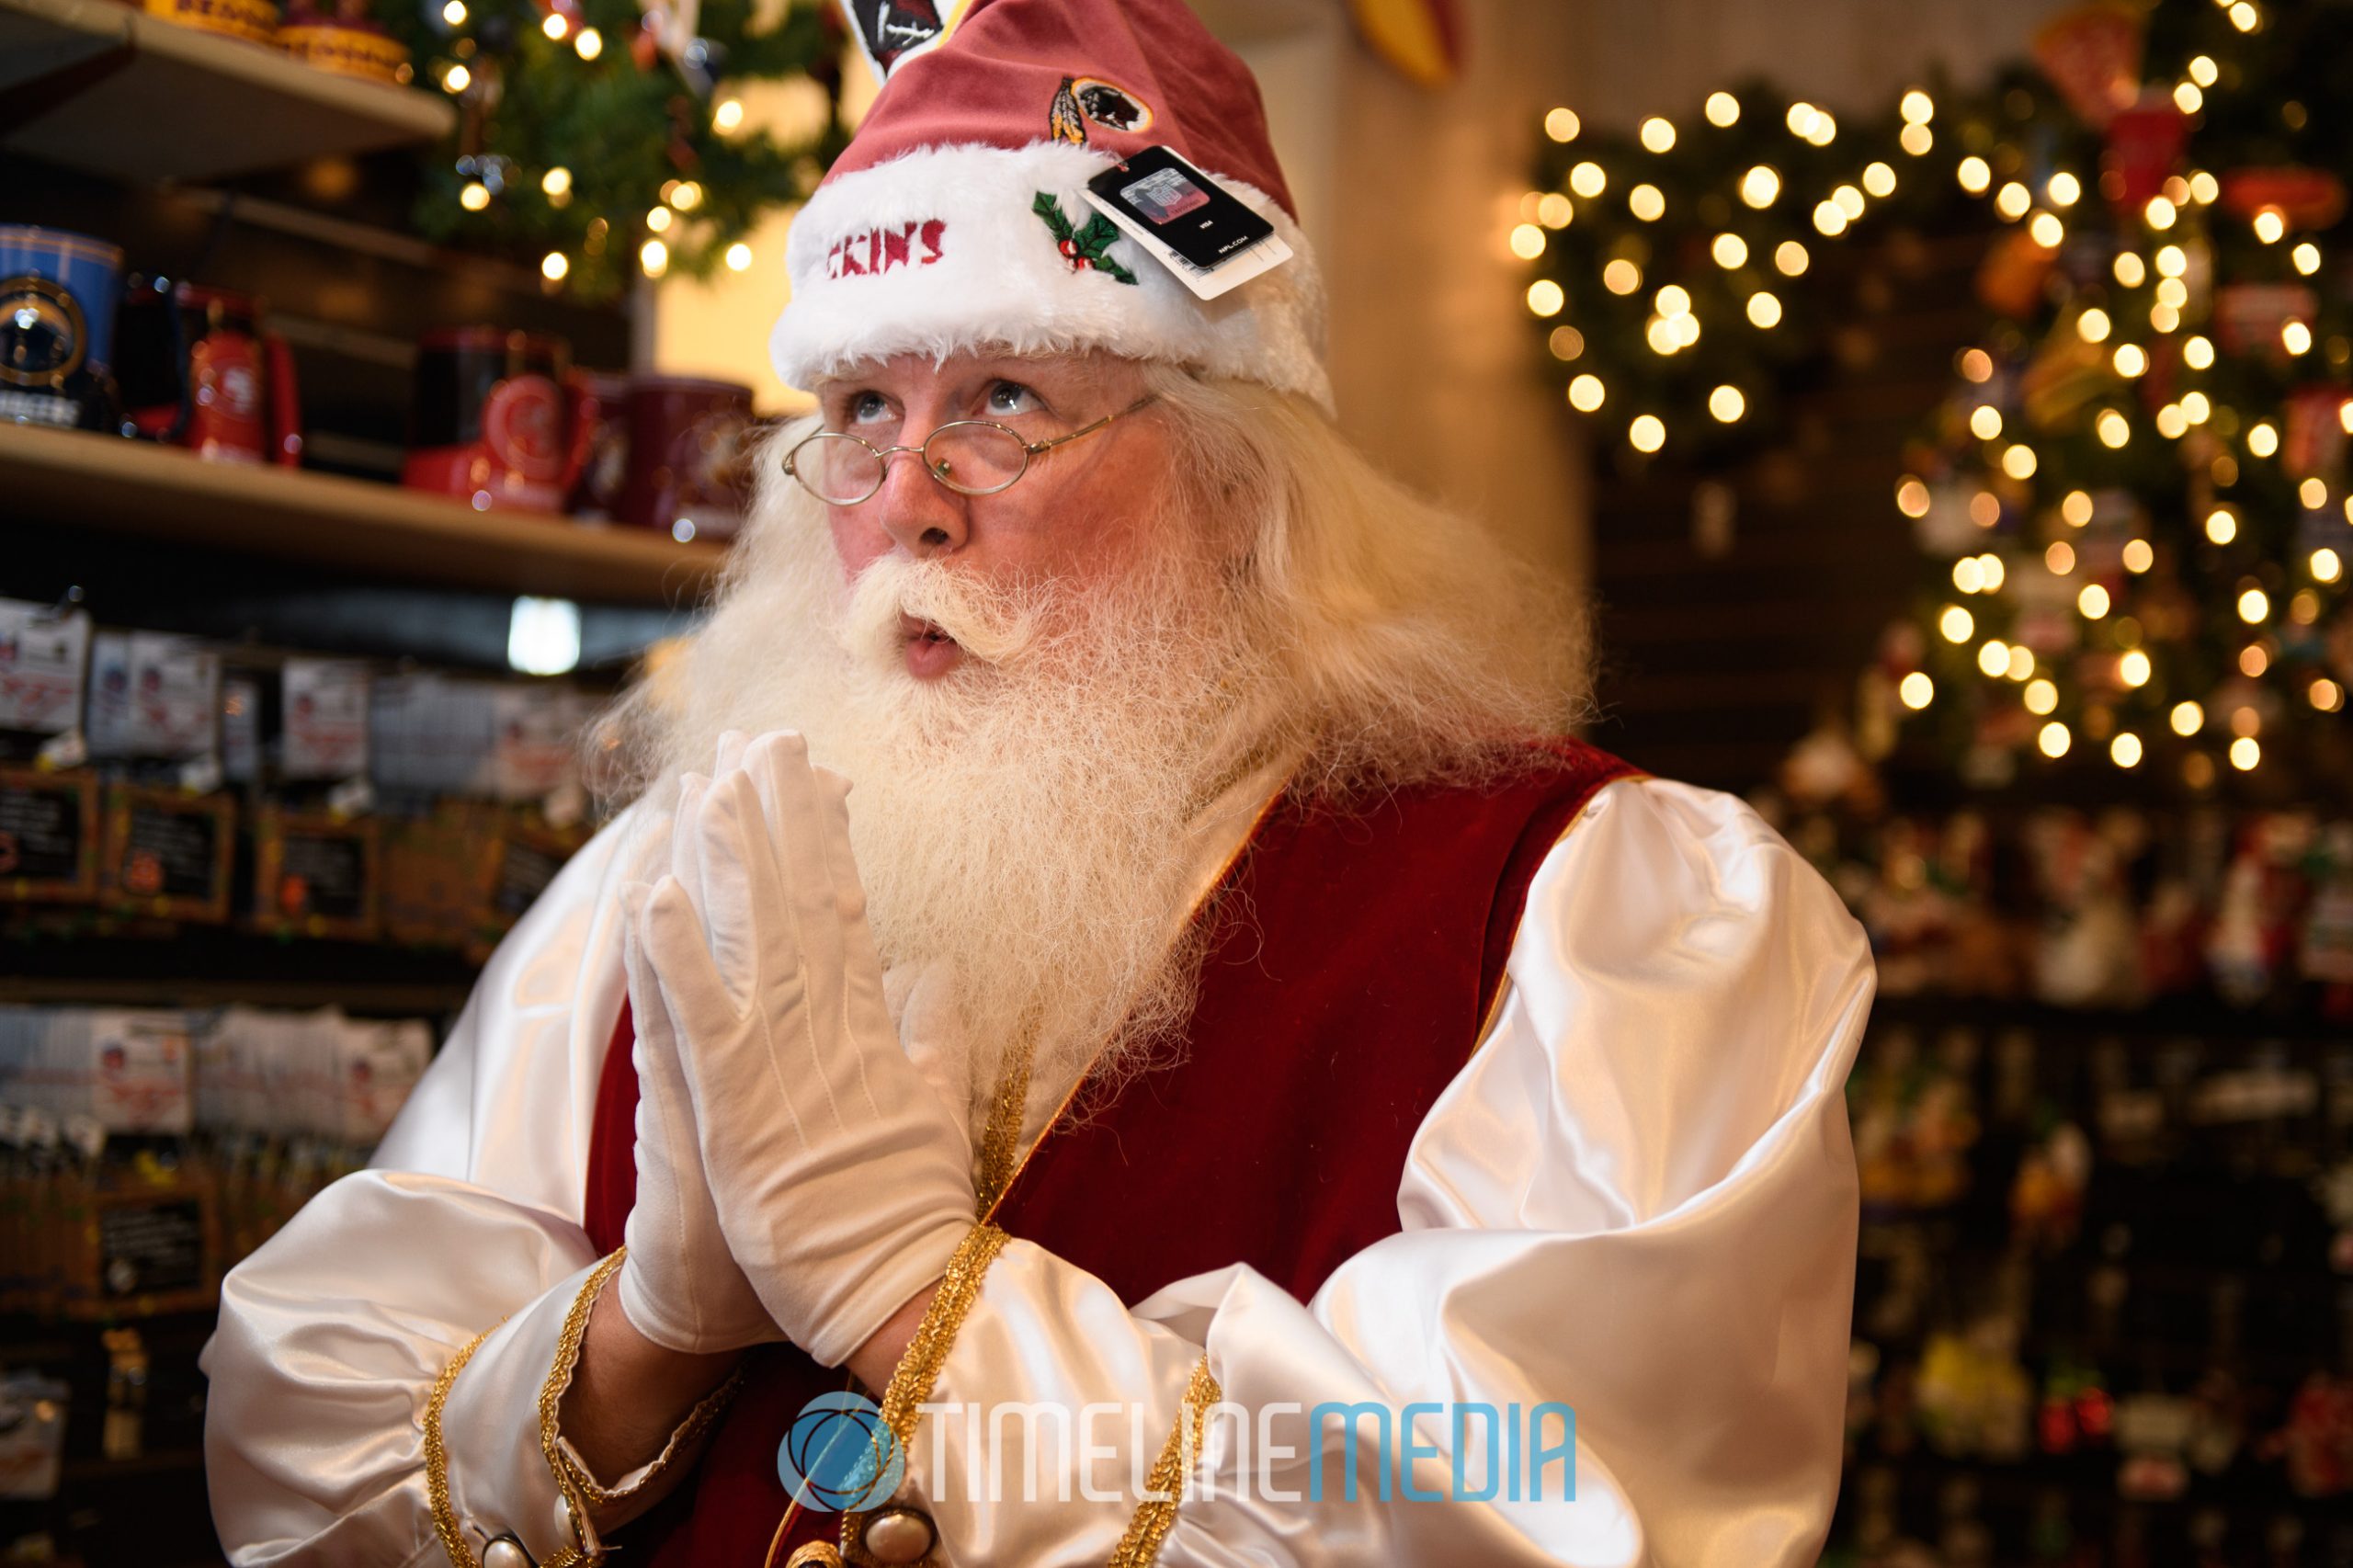 Santa at the Christmas store wishing for a happy and healthy holiday season! 2016 #imwithsanta